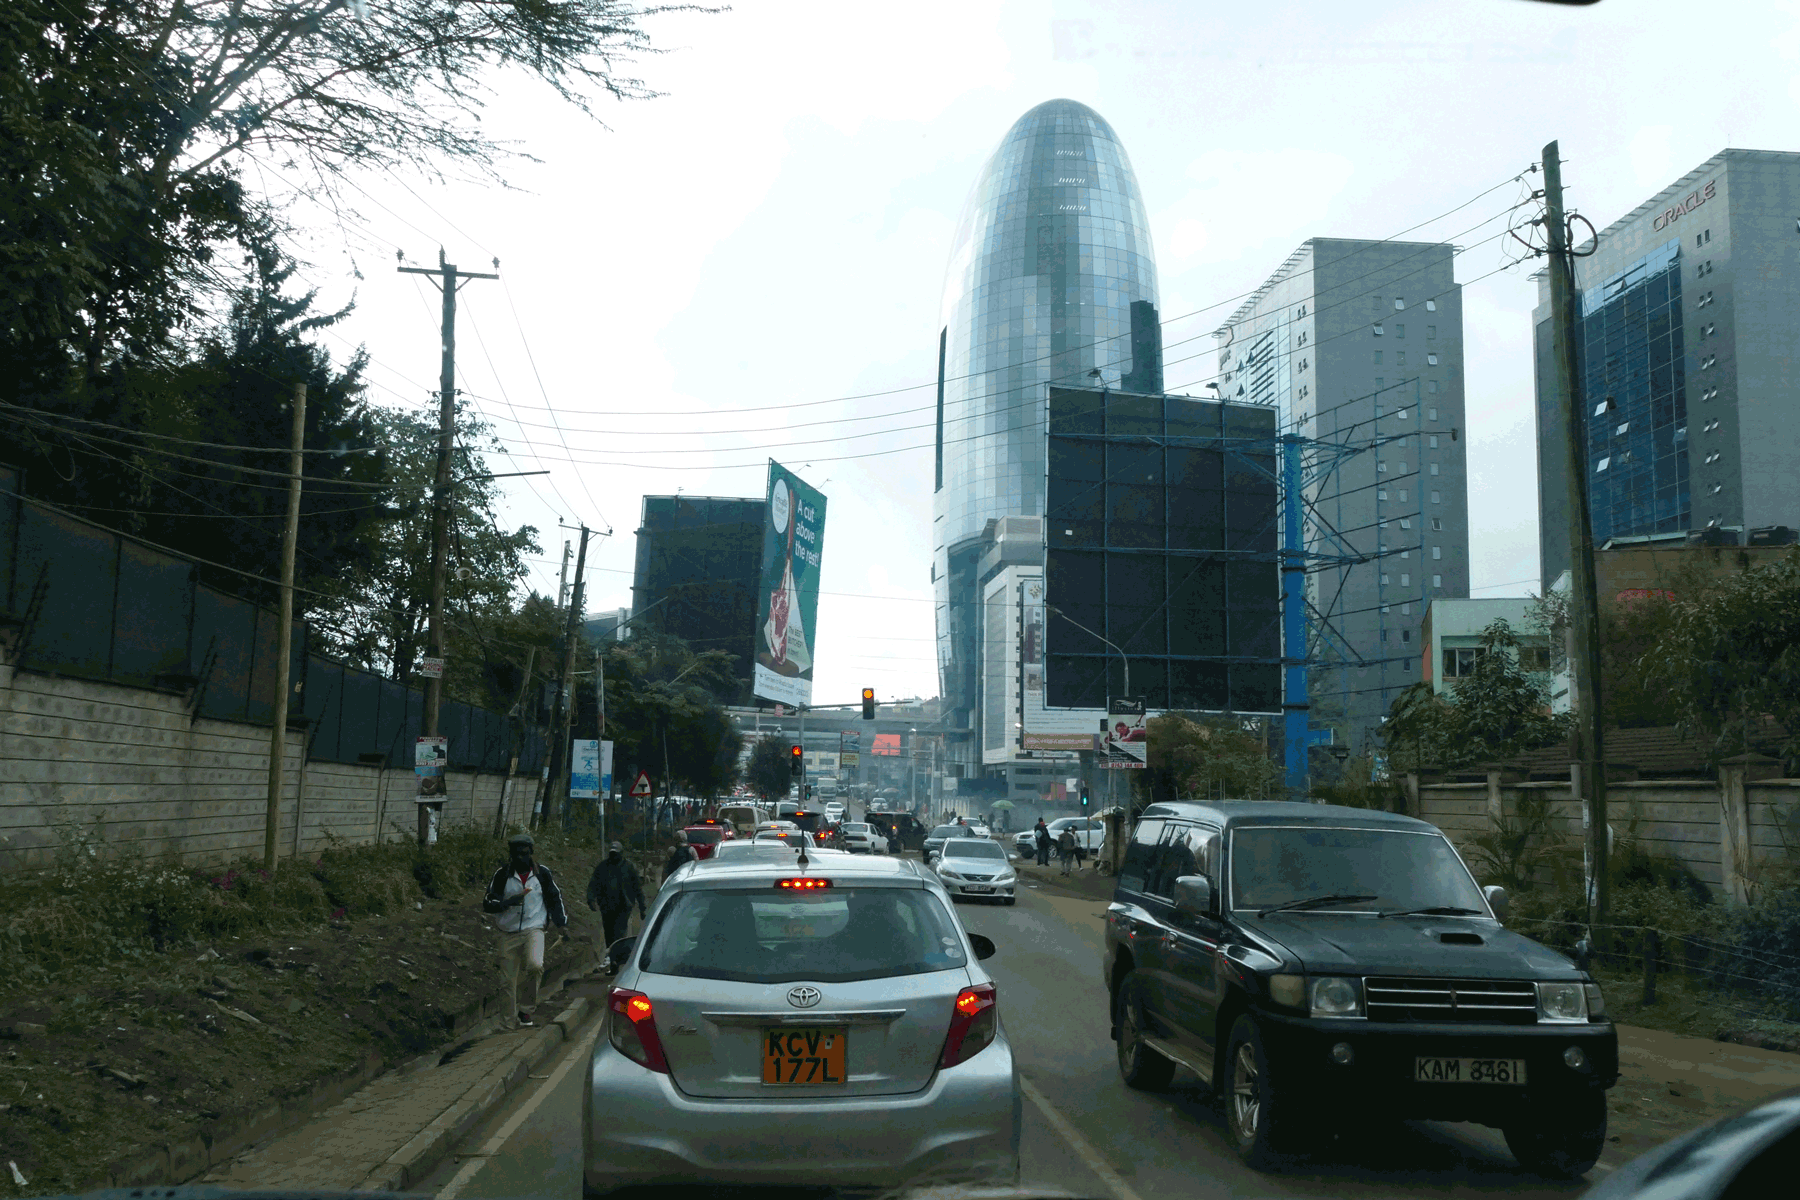 Image of traffic in Nairobi, Kenya